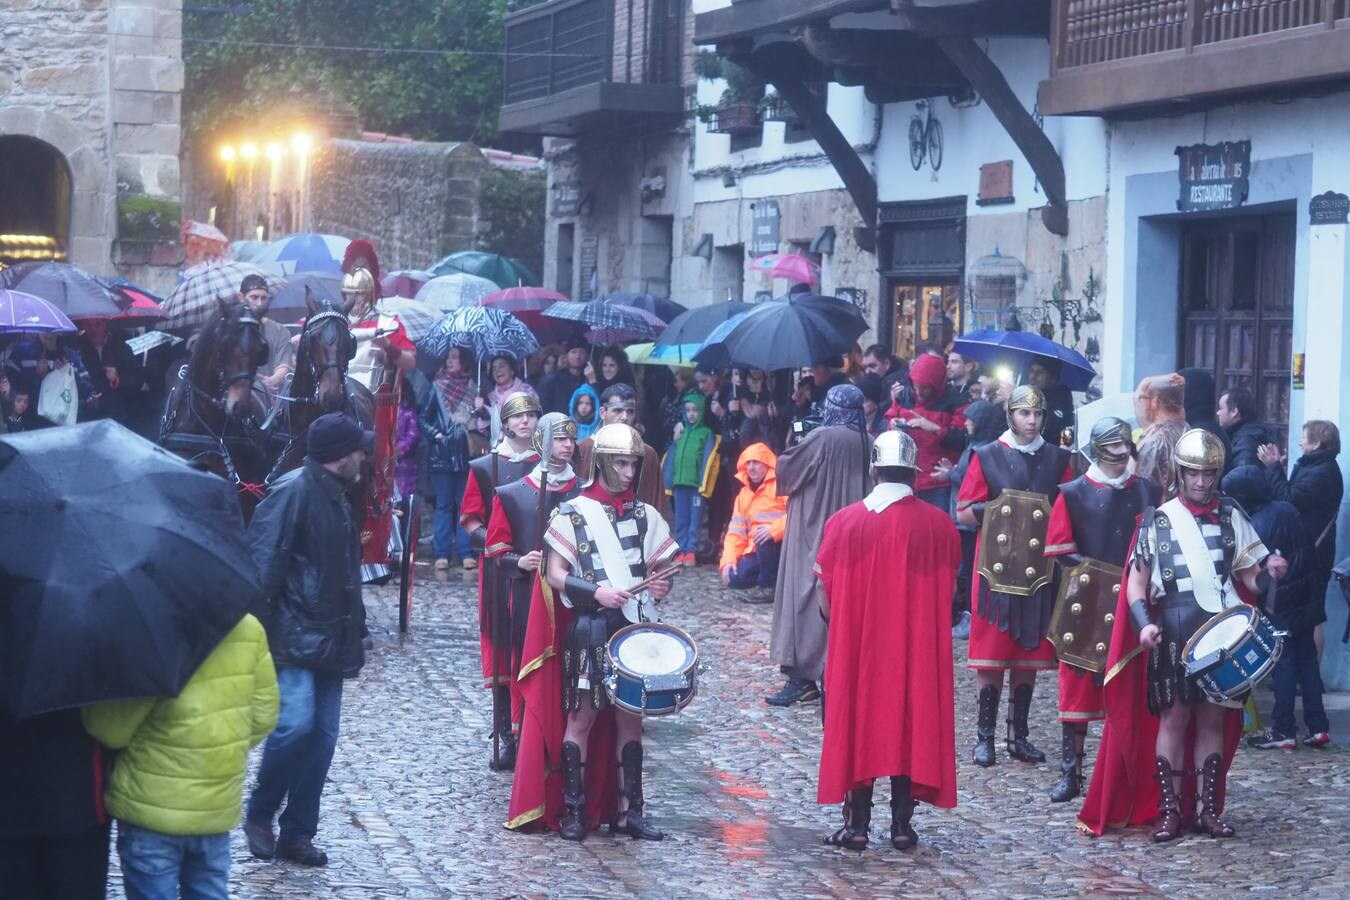 SANTILLANA DEL MAR El desfile dura varias horas y los Reyes Magos están escoltados por las tropas romanas. Fotos: Sane